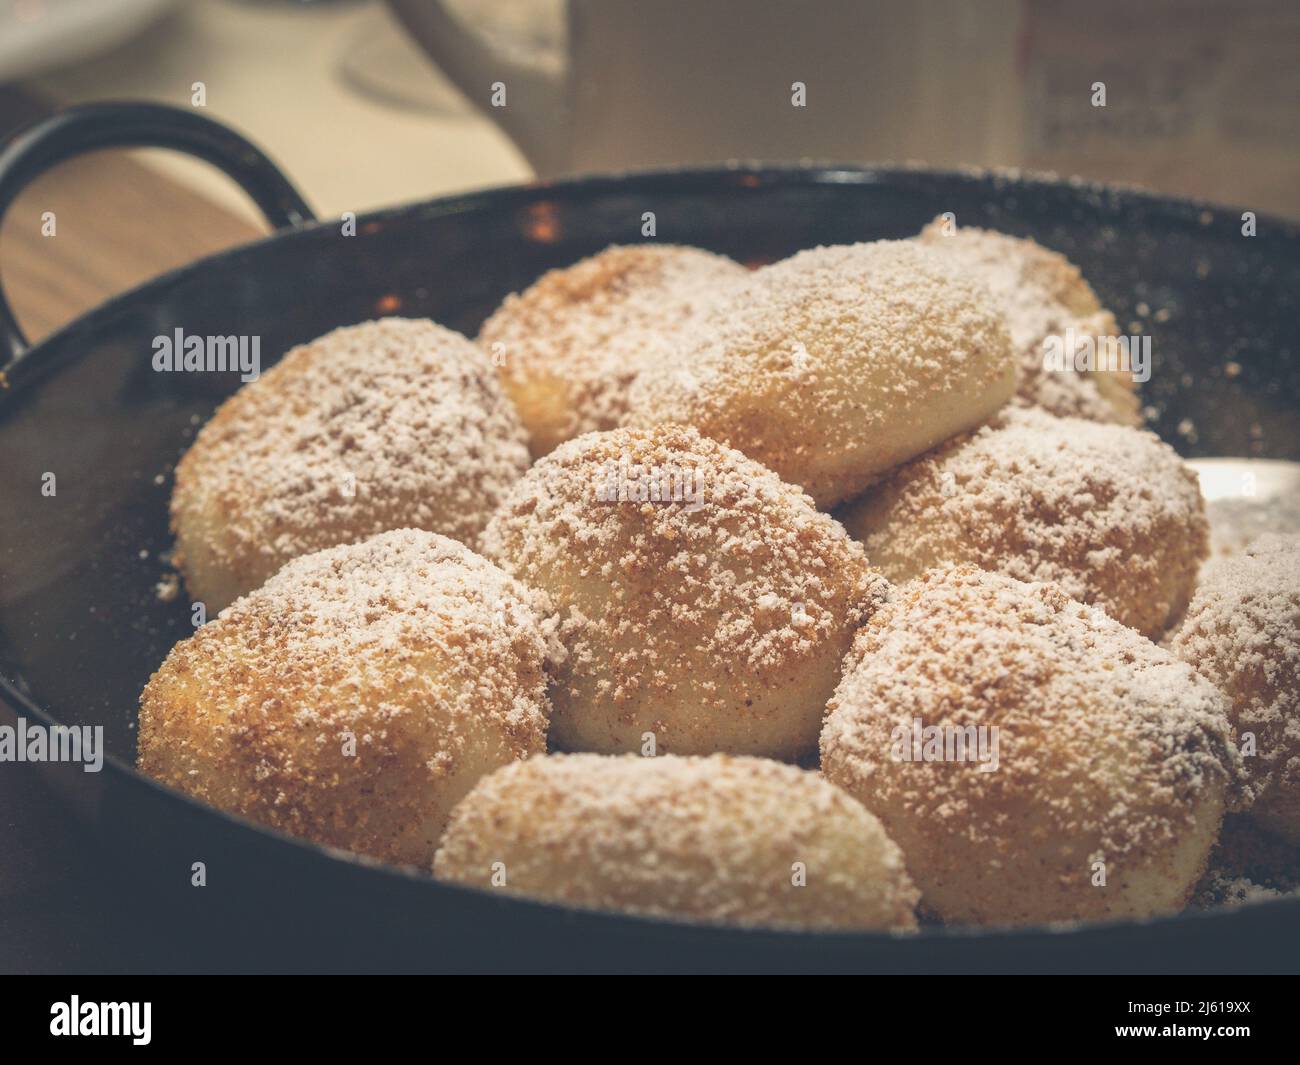 L'image montre un groupe de boulettes d'abricot - Marillenknödel servi dans une casserole rustique et garni de chapelure et de sucre en poudre Banque D'Images